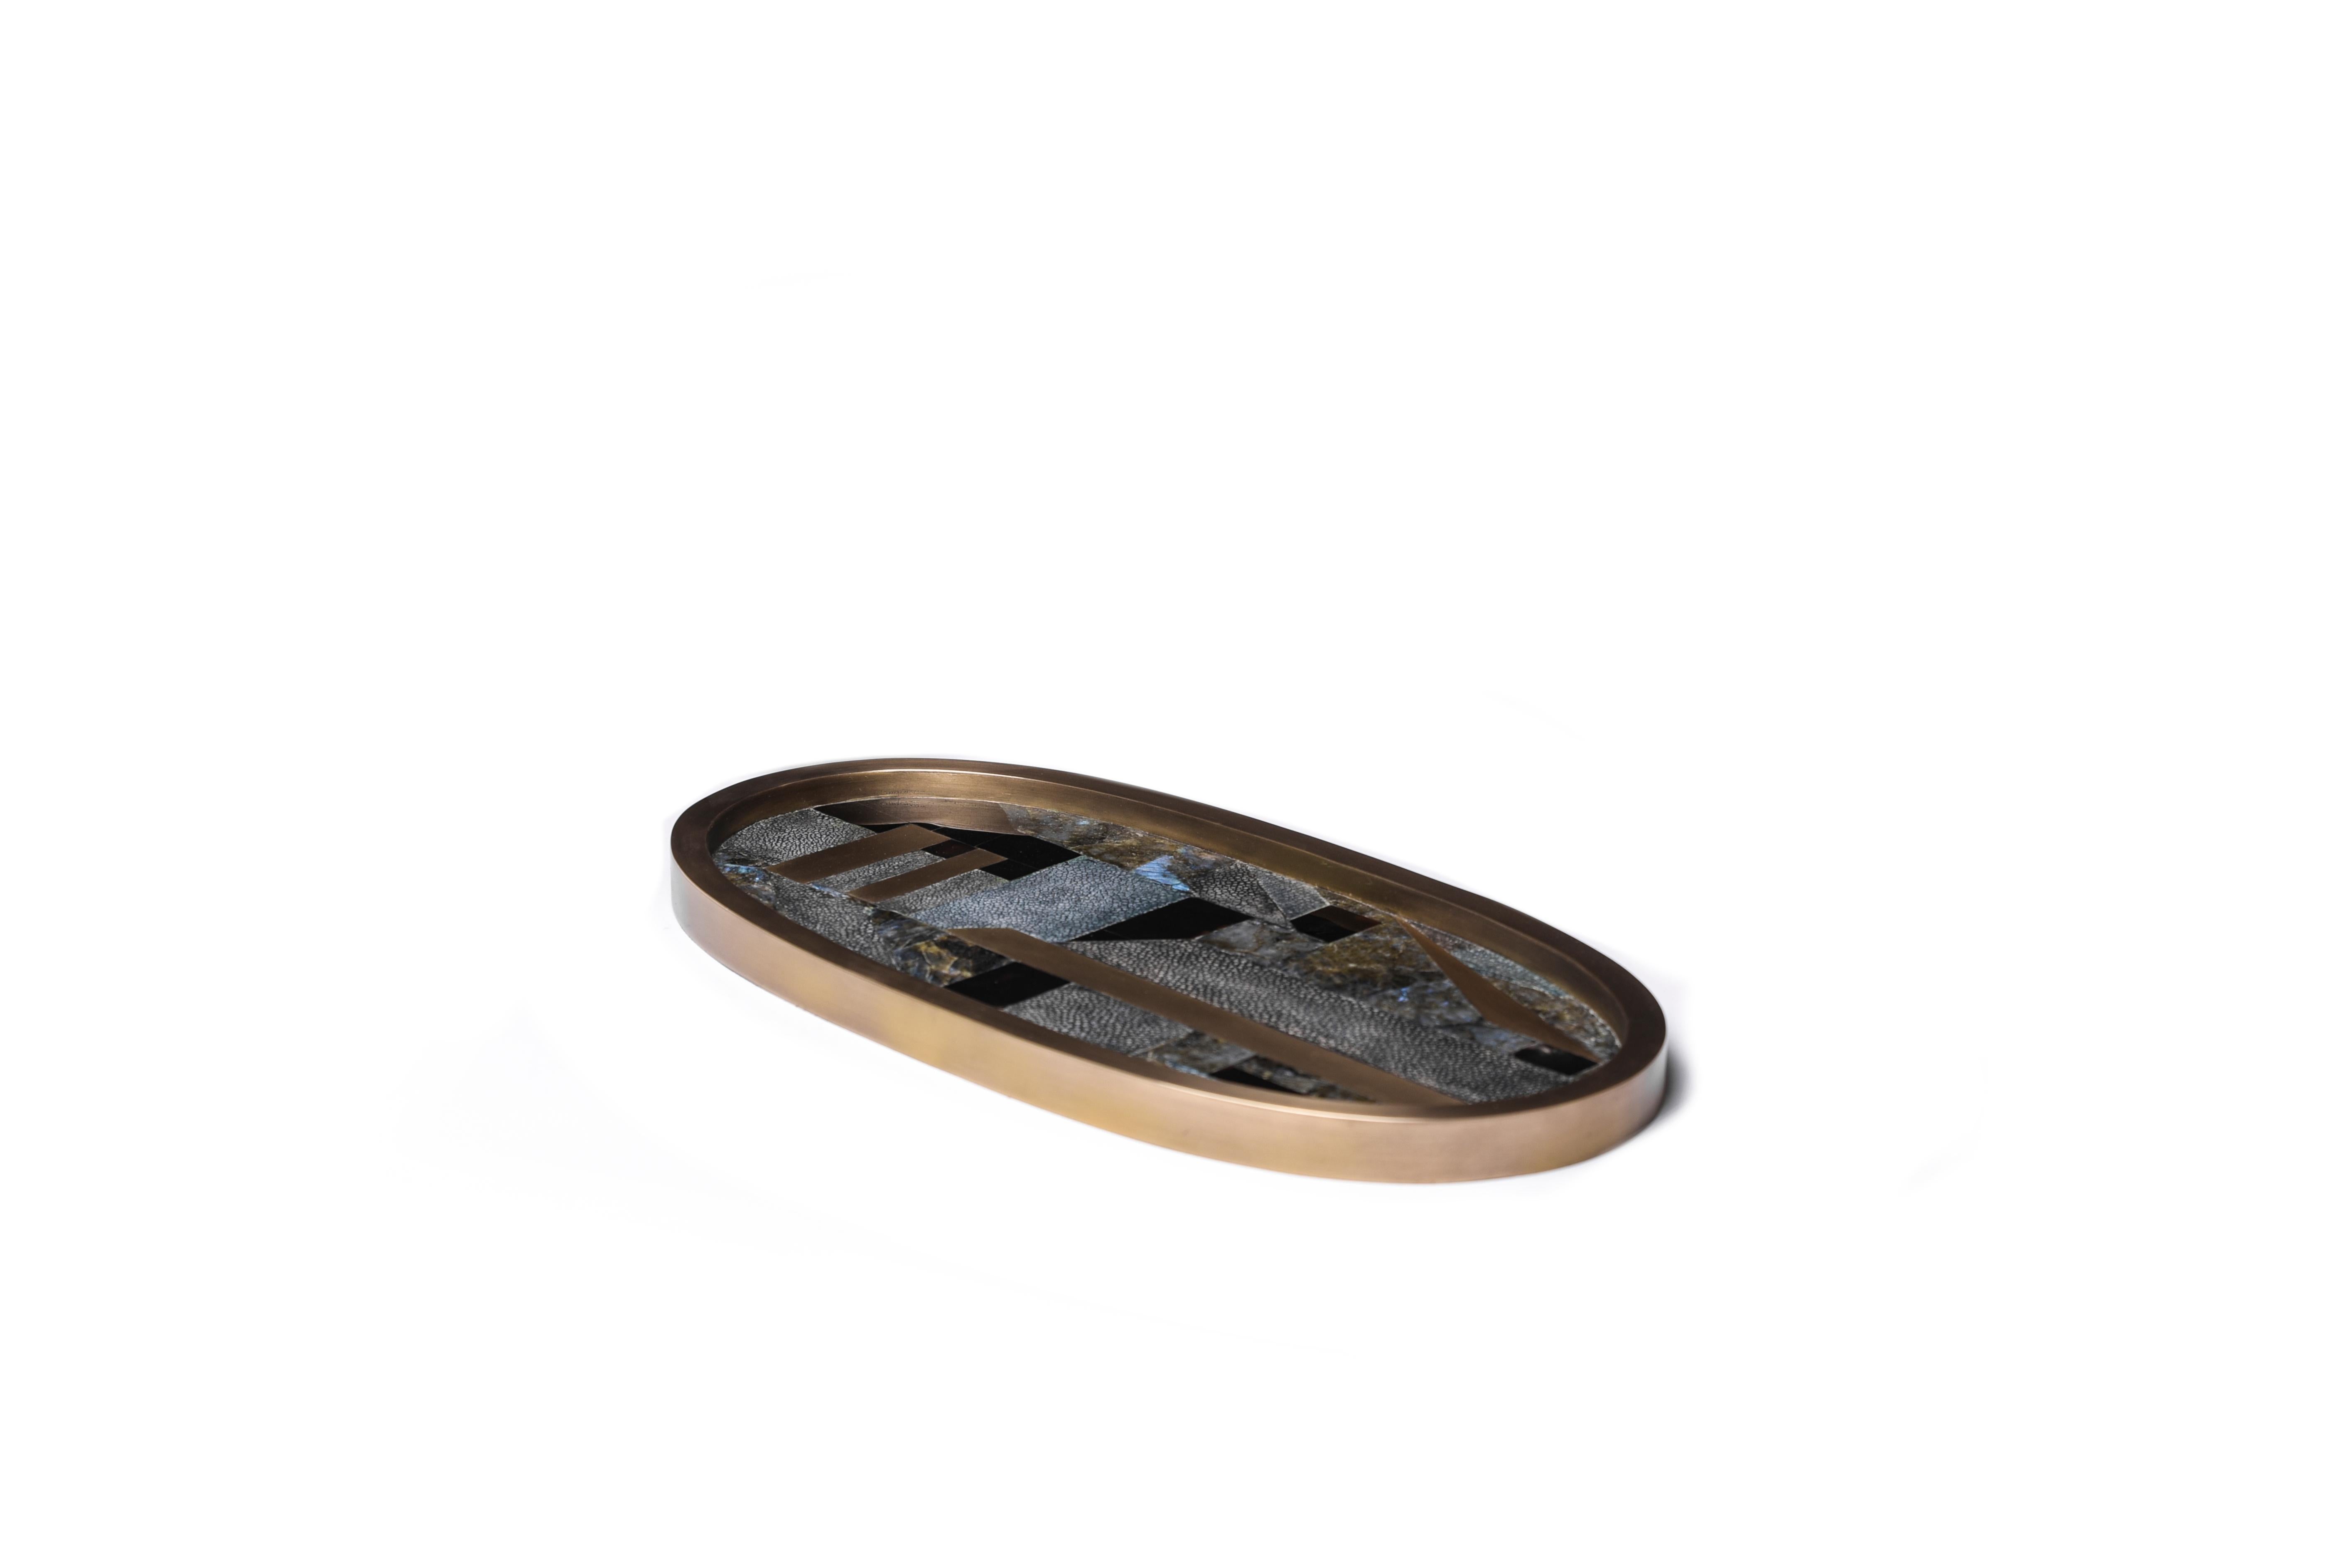 Ein klassisches ovales Tablett für den Waschtisch in neuem Gewand: Dieses geometrische Tablett von Kifu Paris ist mit einer Mischung aus blauem Chagrin, schwarzer Muschel, lemurianischem Quarz und Messing in Bronze-Patina eingelegt, was es zu einem